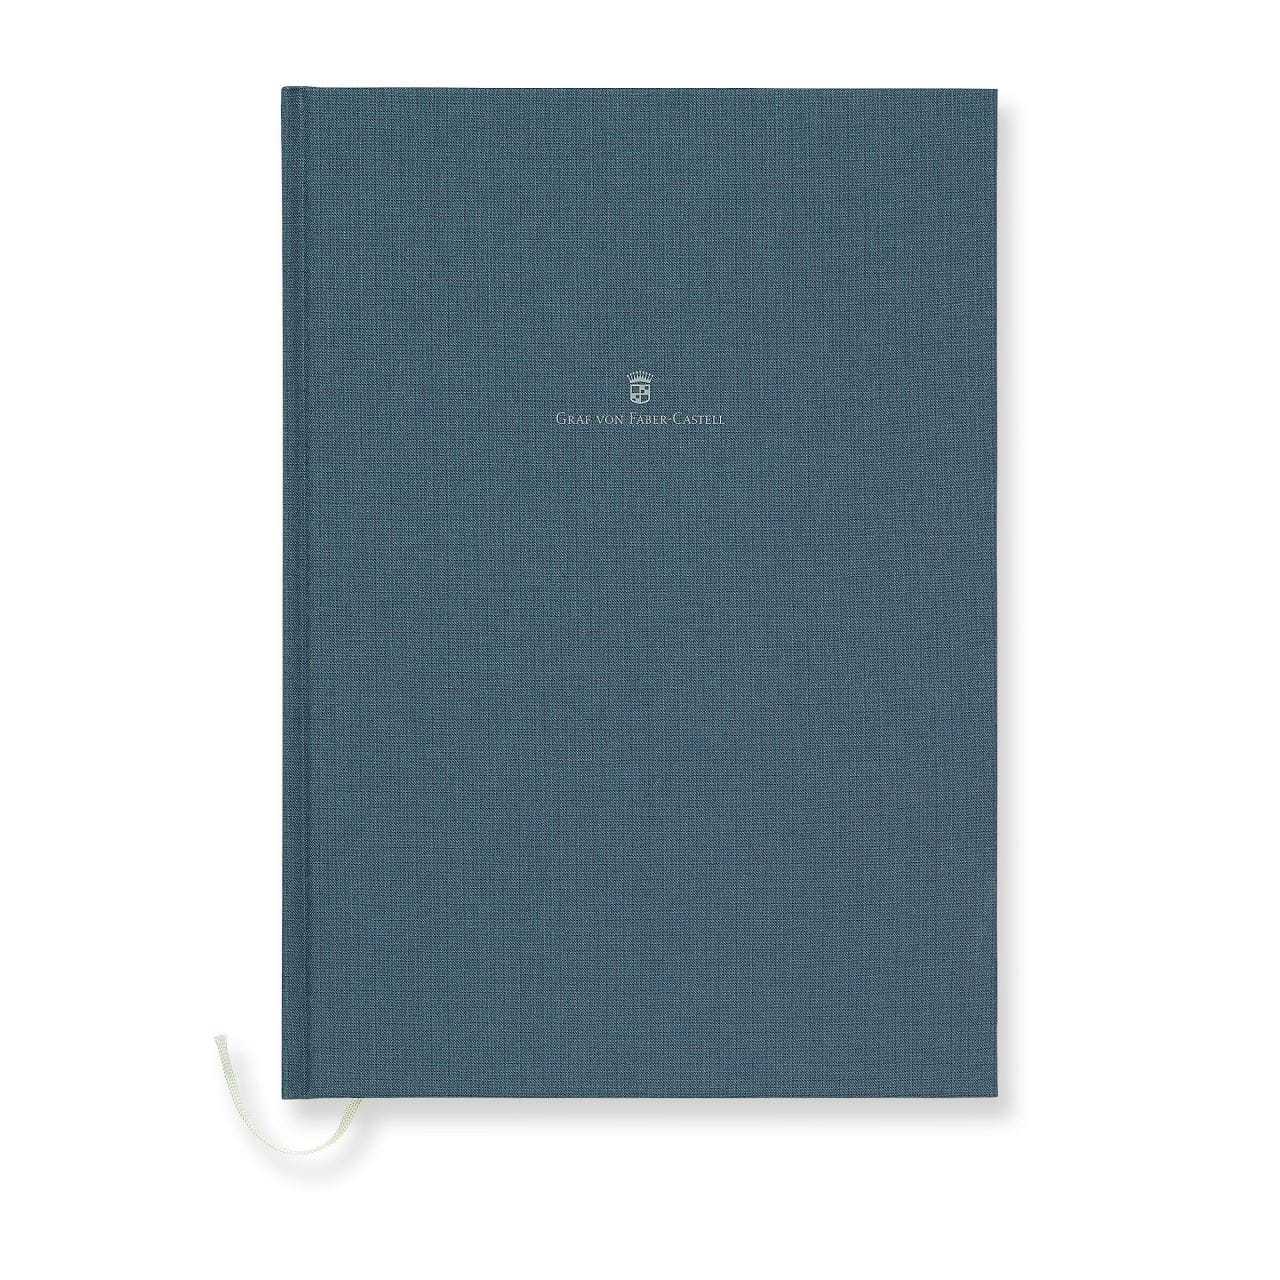 Graf-von-Faber-Castell - Book con copertina in lino A4 Blu Notte